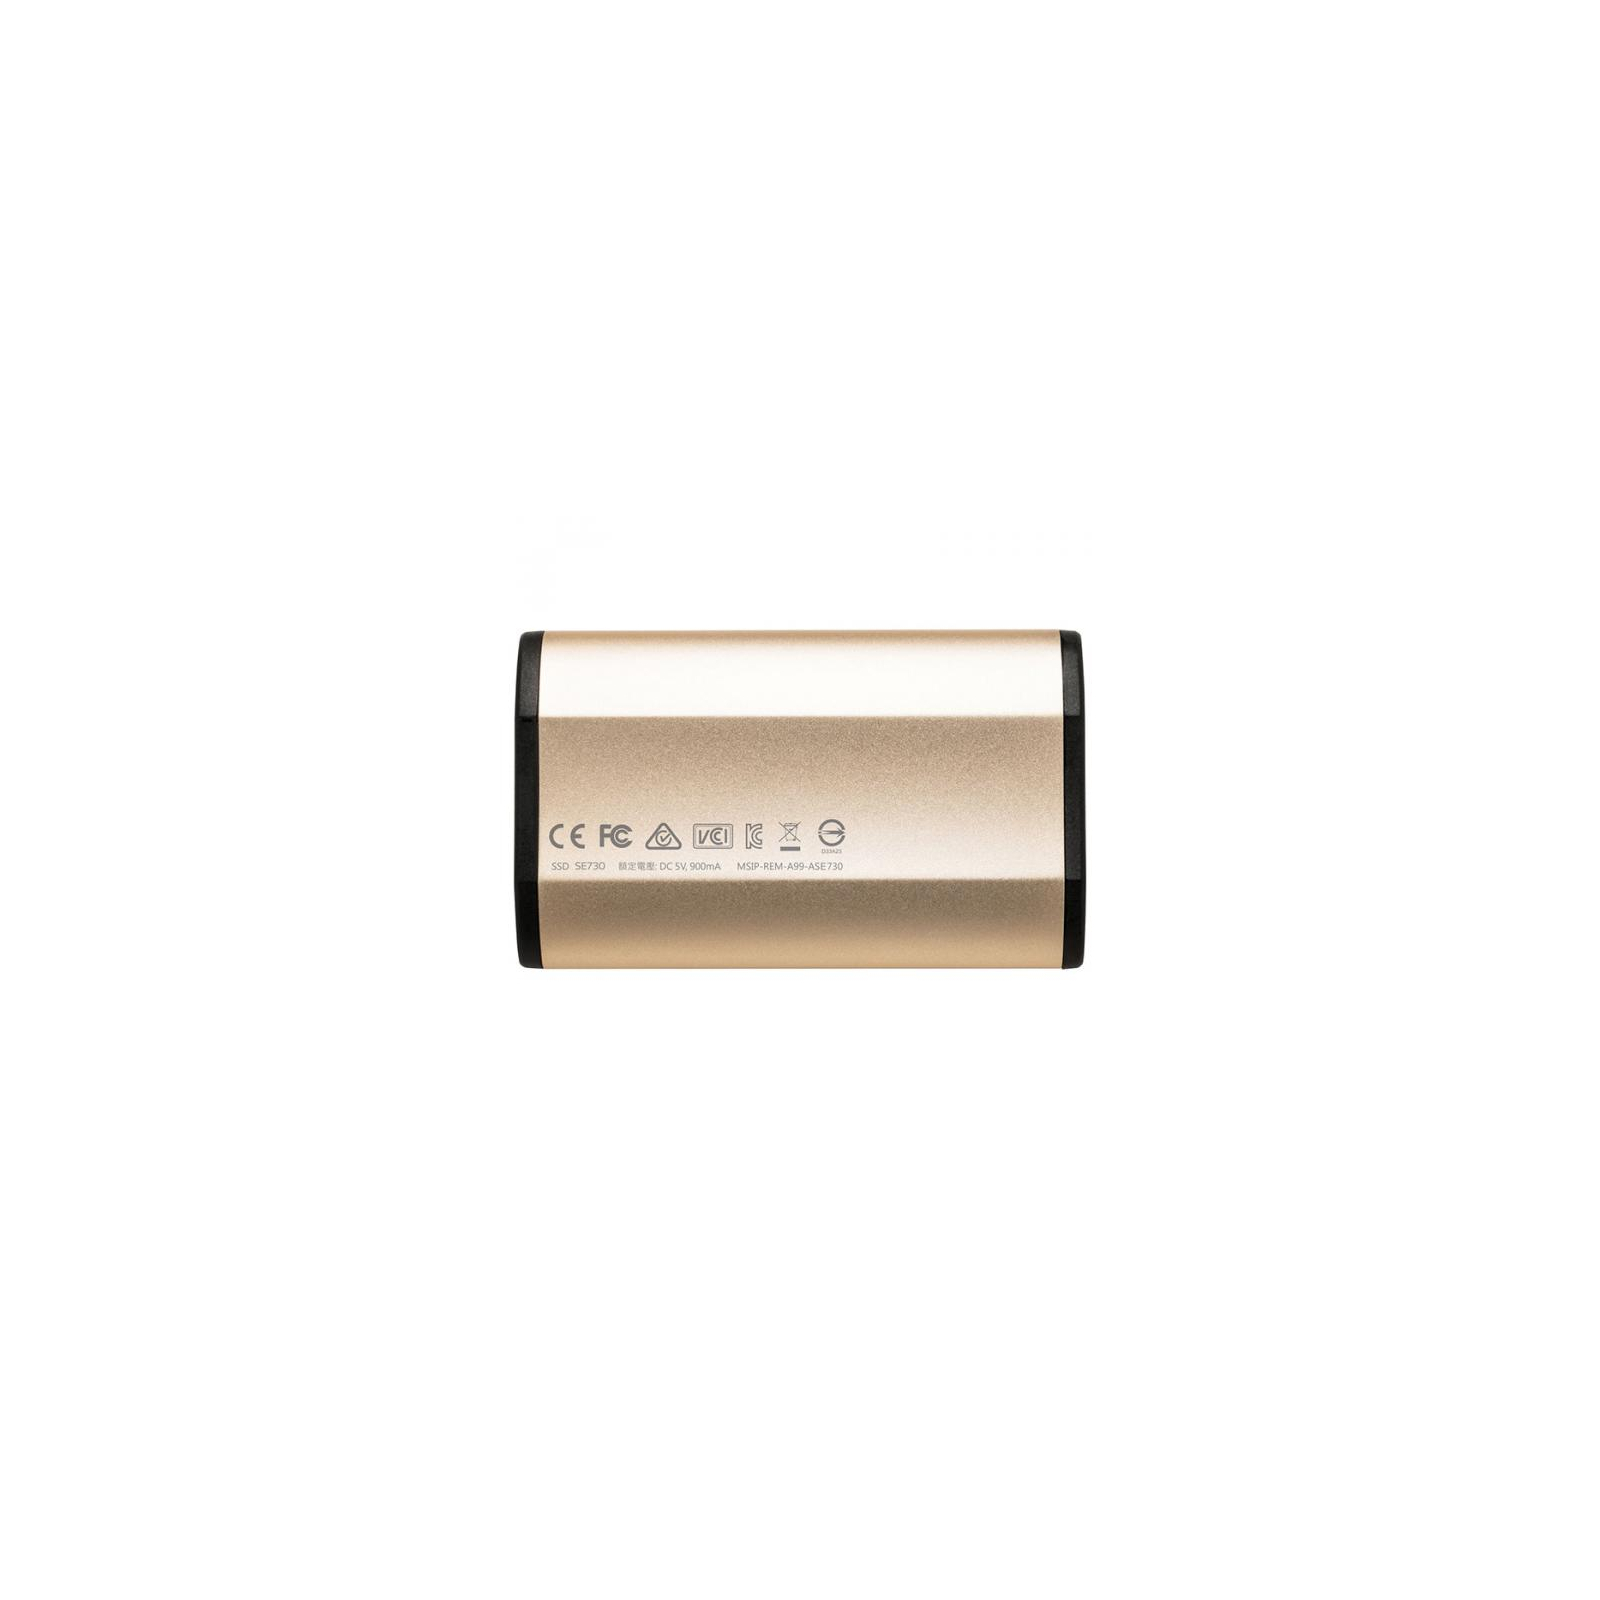 Накопитель SSD USB 3.1 250GB ADATA (ASE730-250GU31-CGD) изображение 2